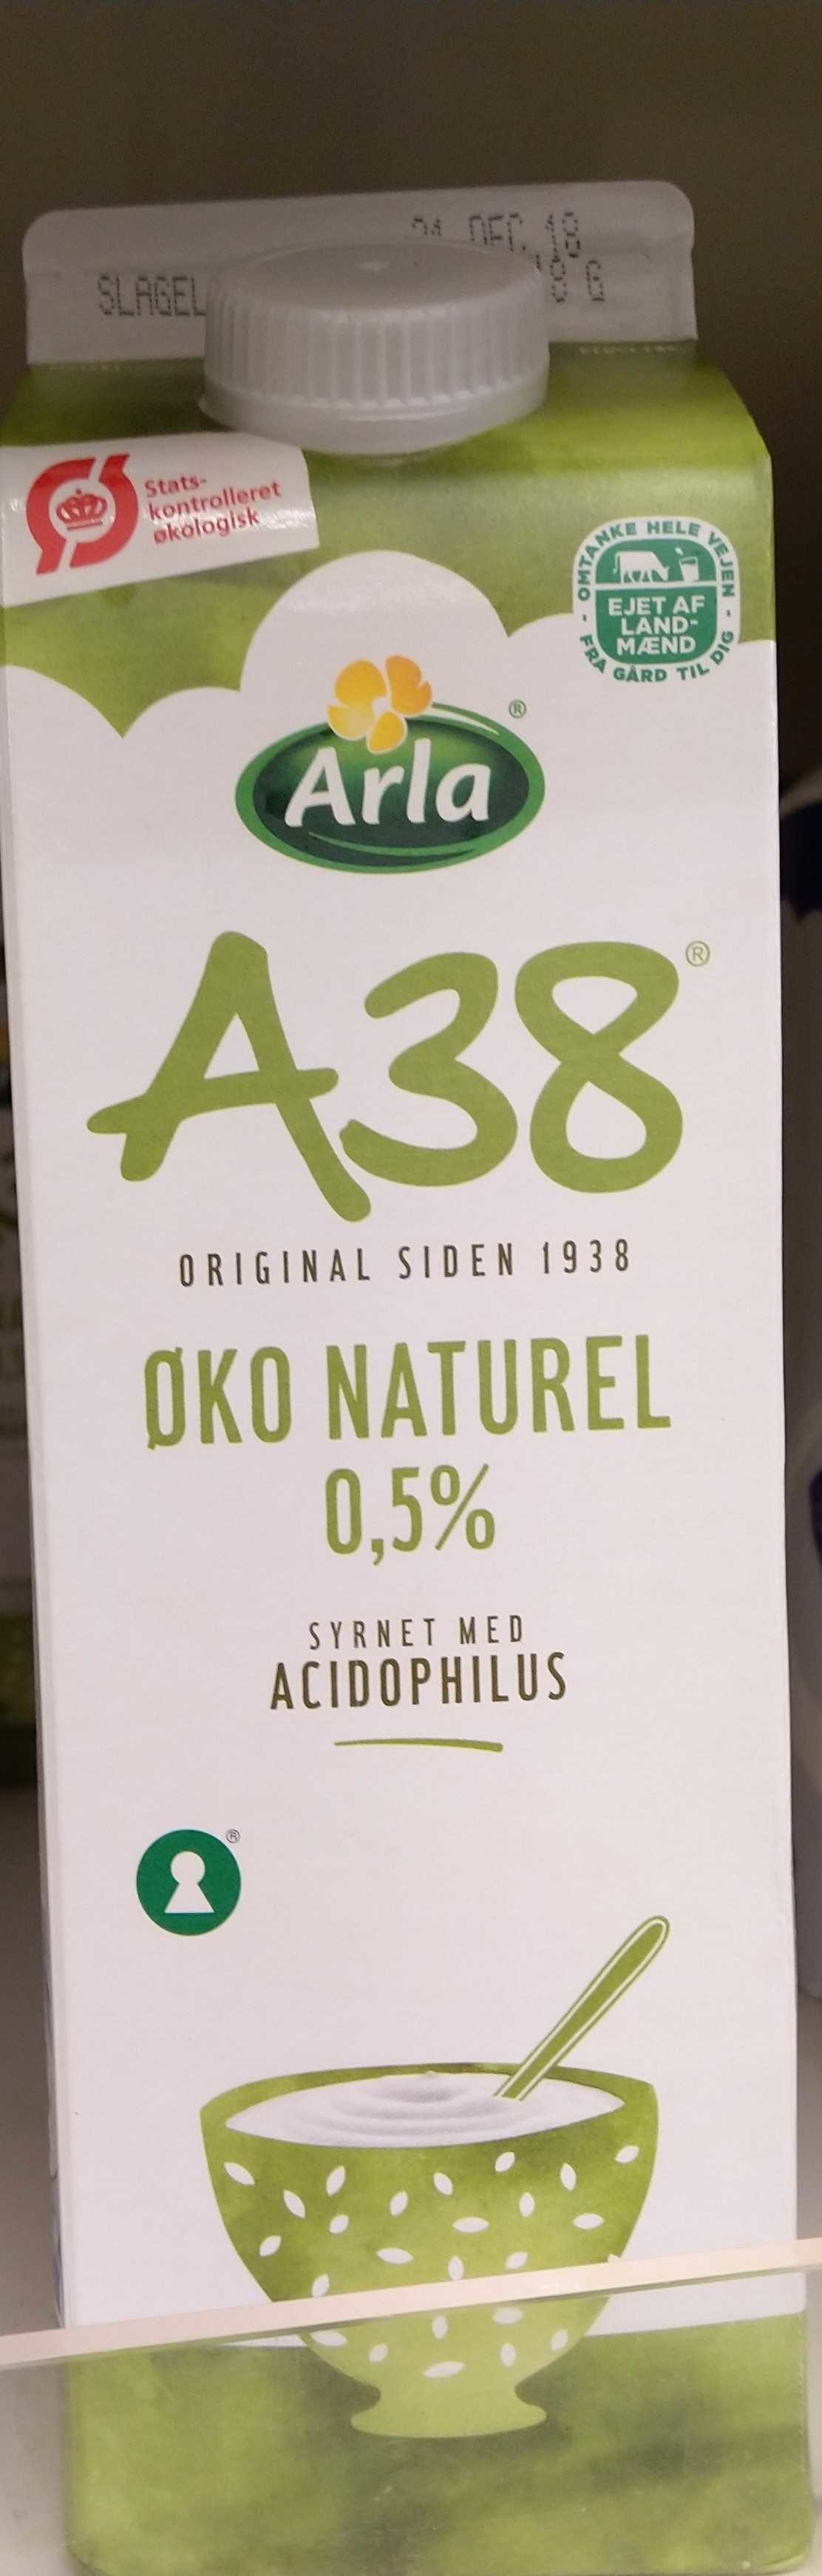 A38 øko naturel 0.5% - Prodotto - en